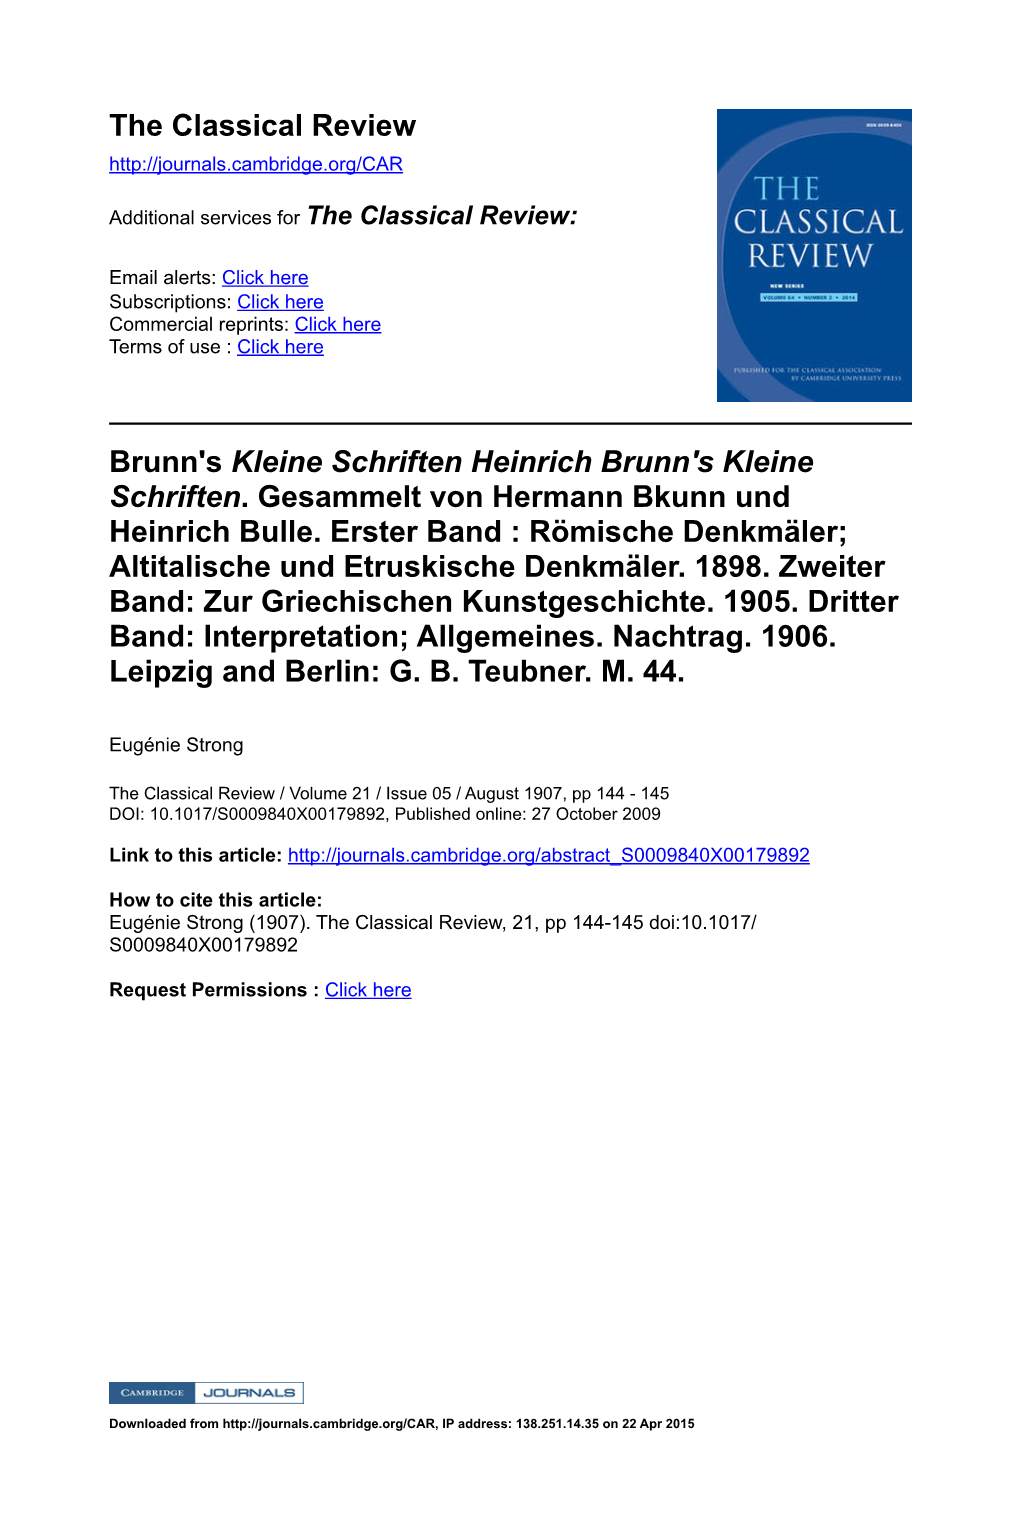 Brunn's Kleine Schriften Heinrich Brunn's Kleine Schriften